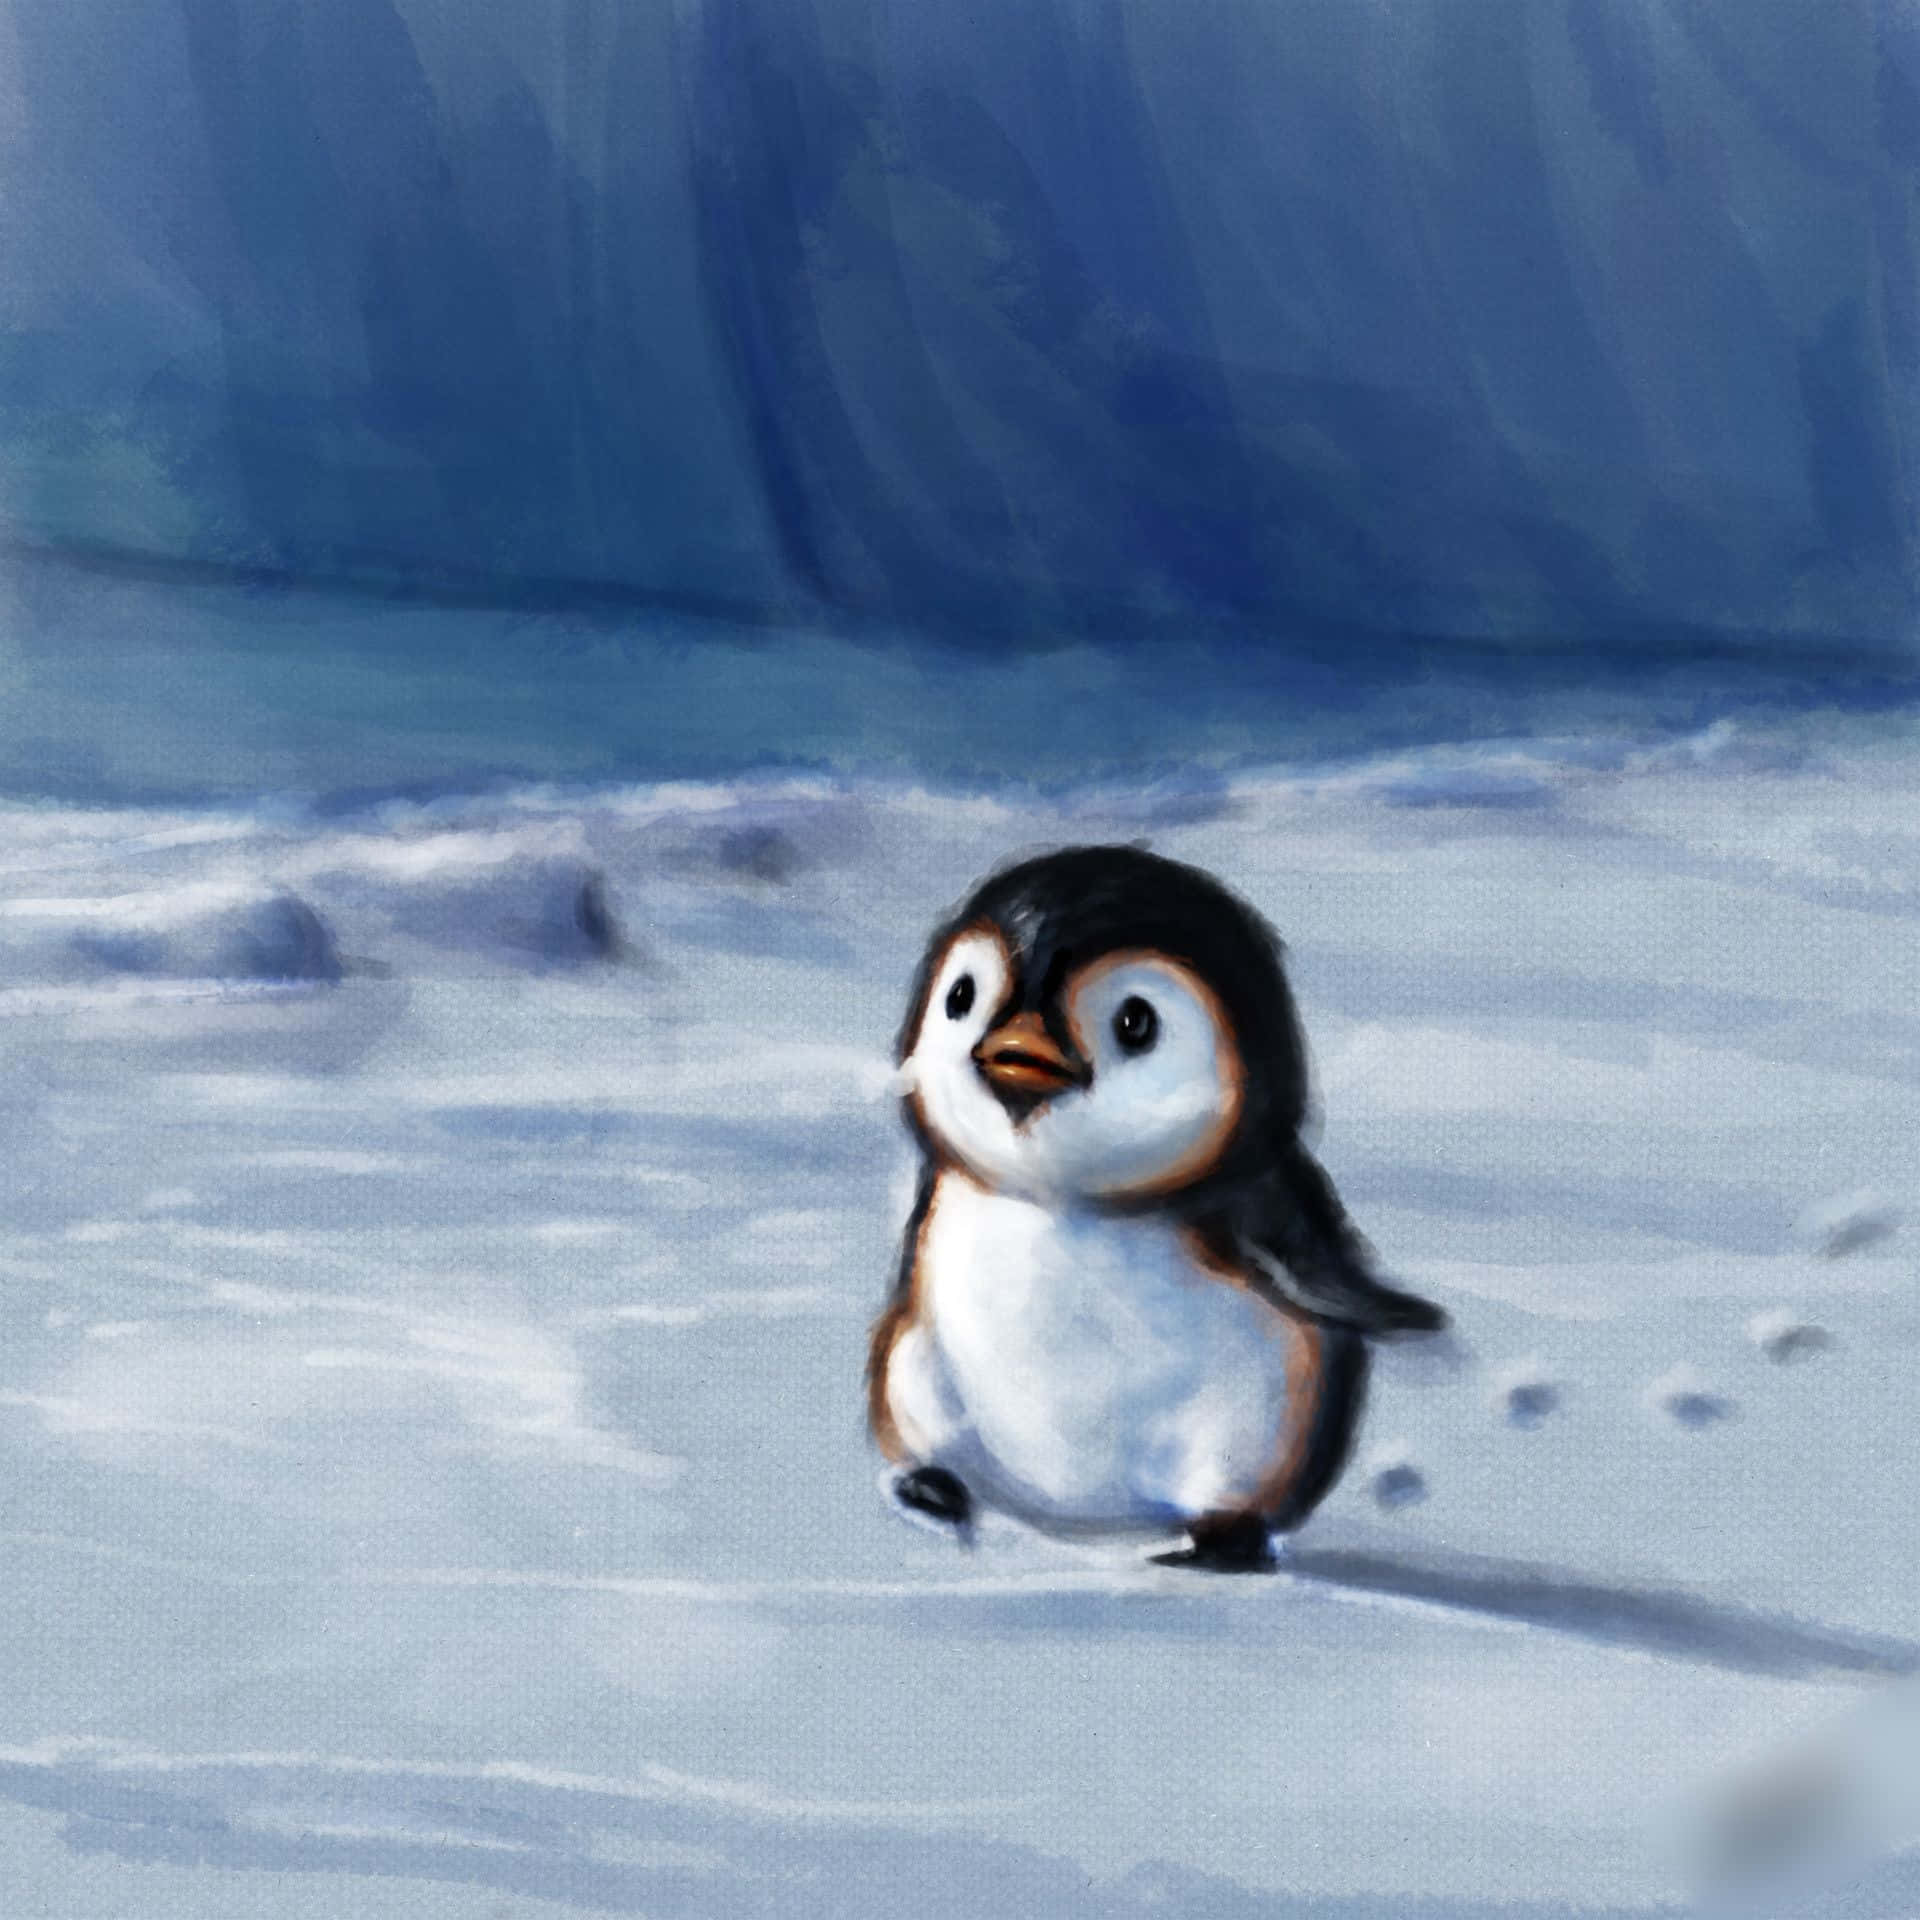 Immagini Di Simpatici Pinguini